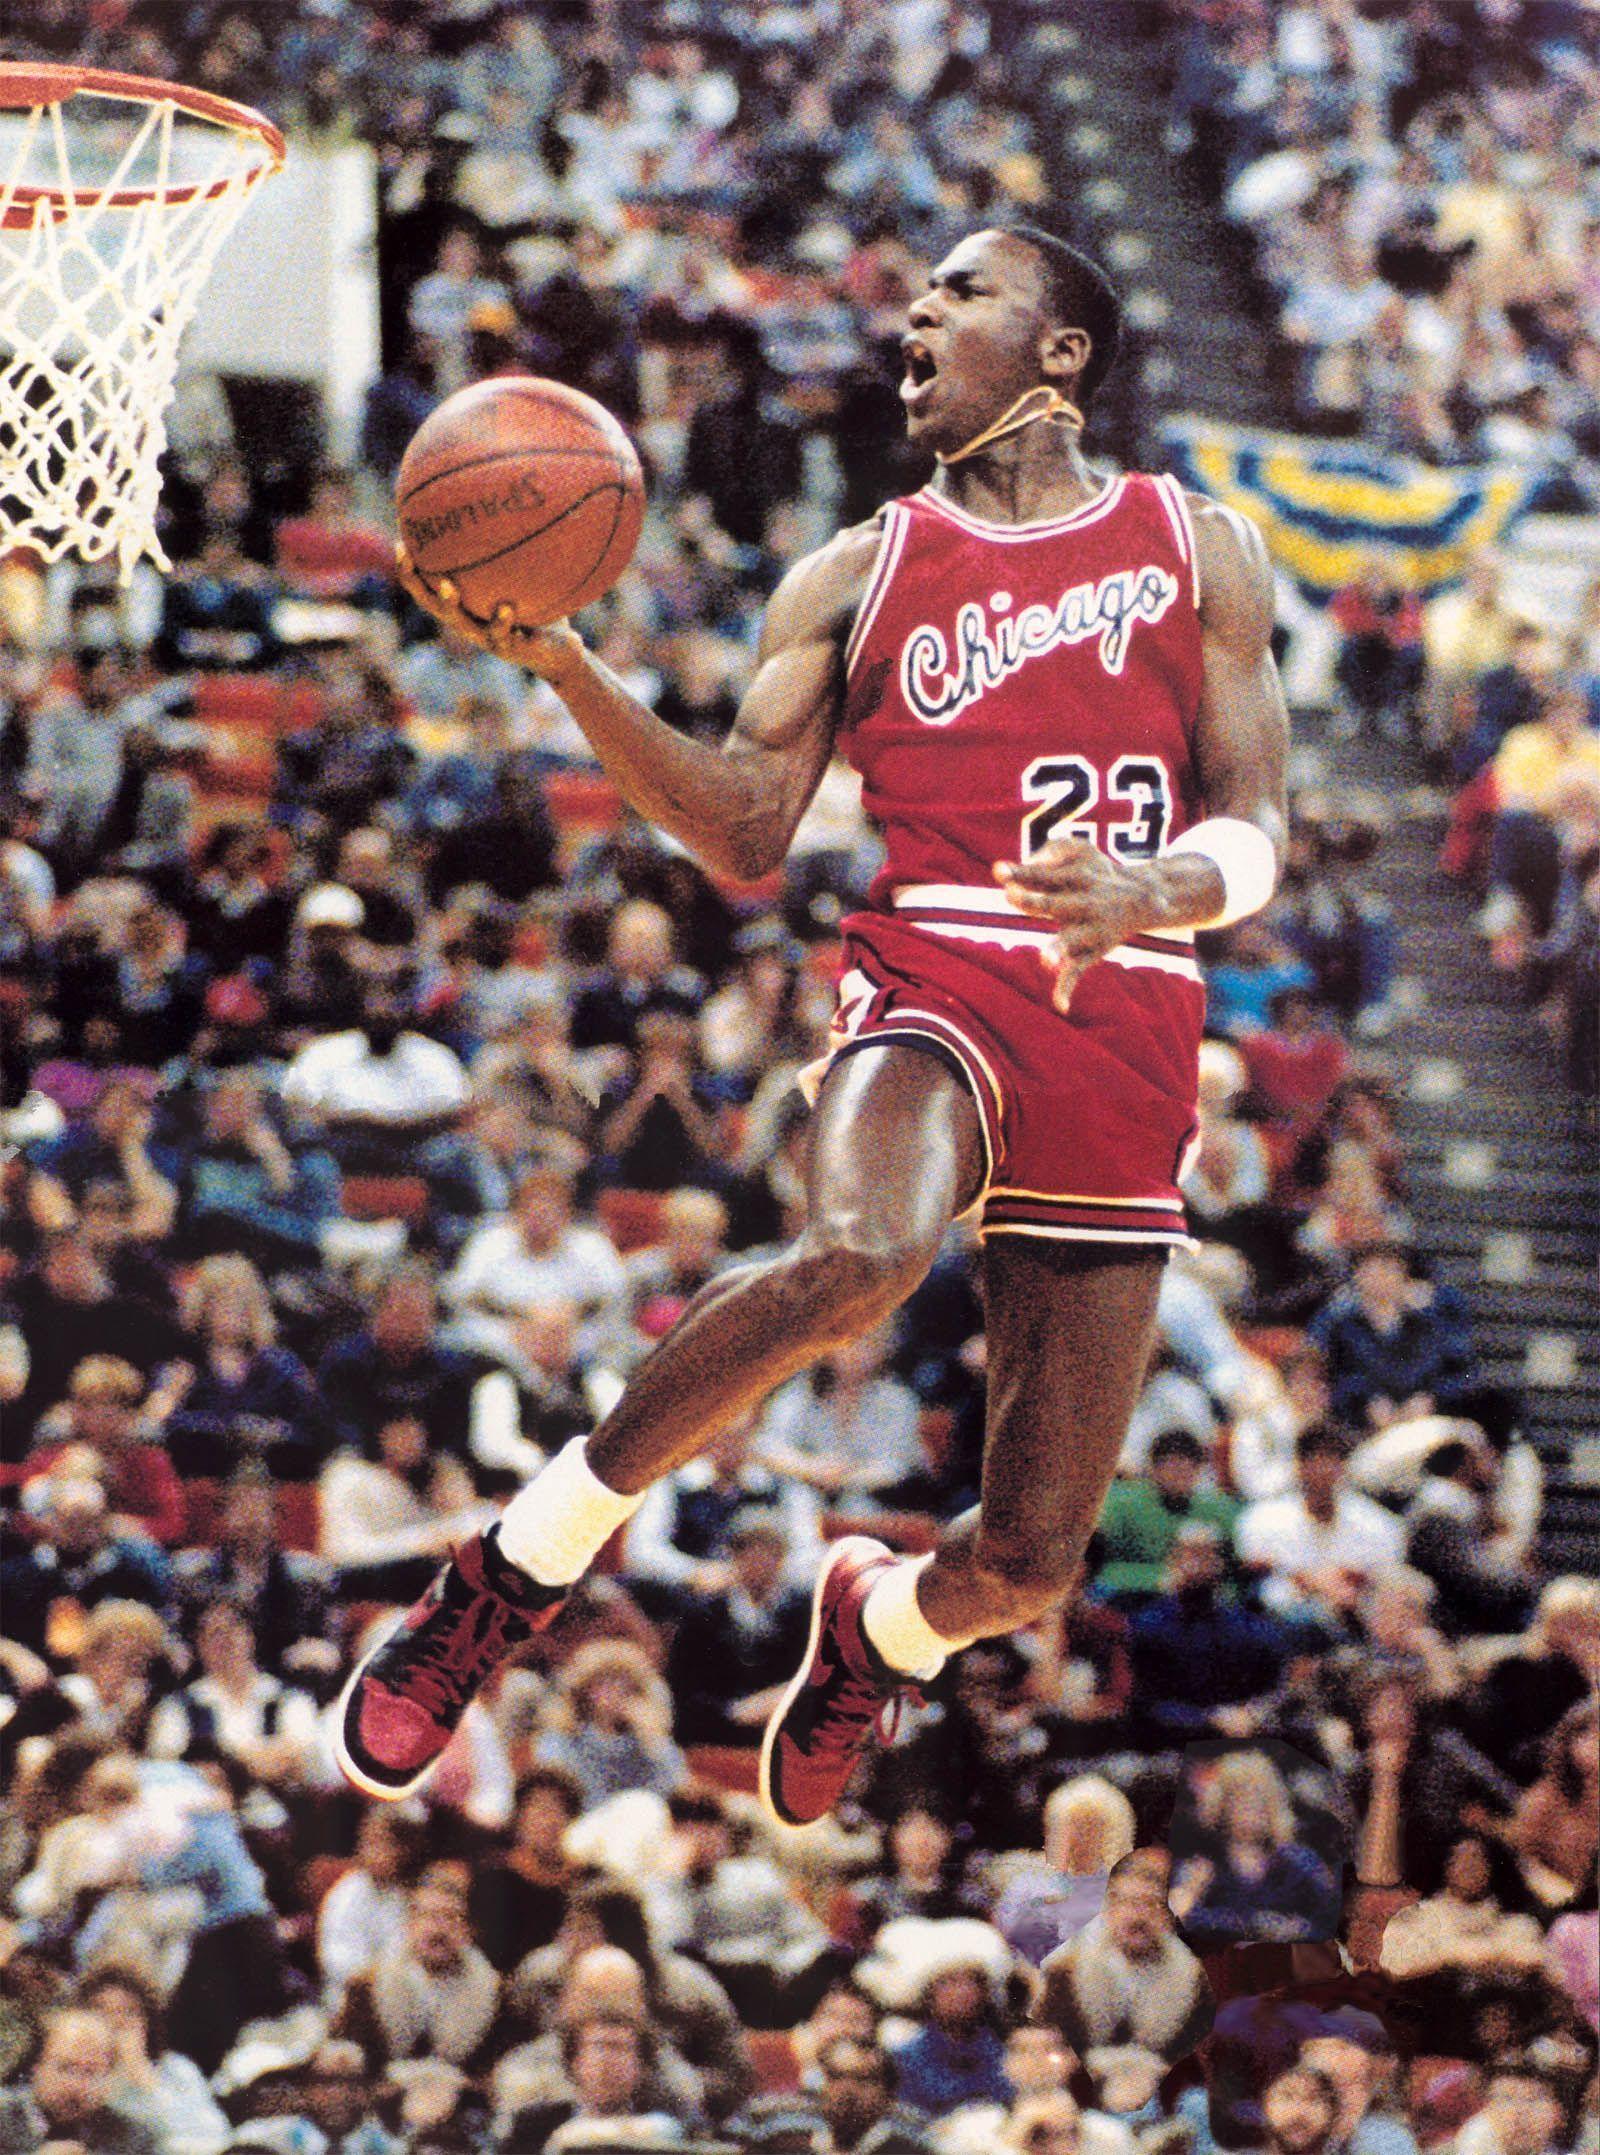 Wallpaper « Michael Jordan